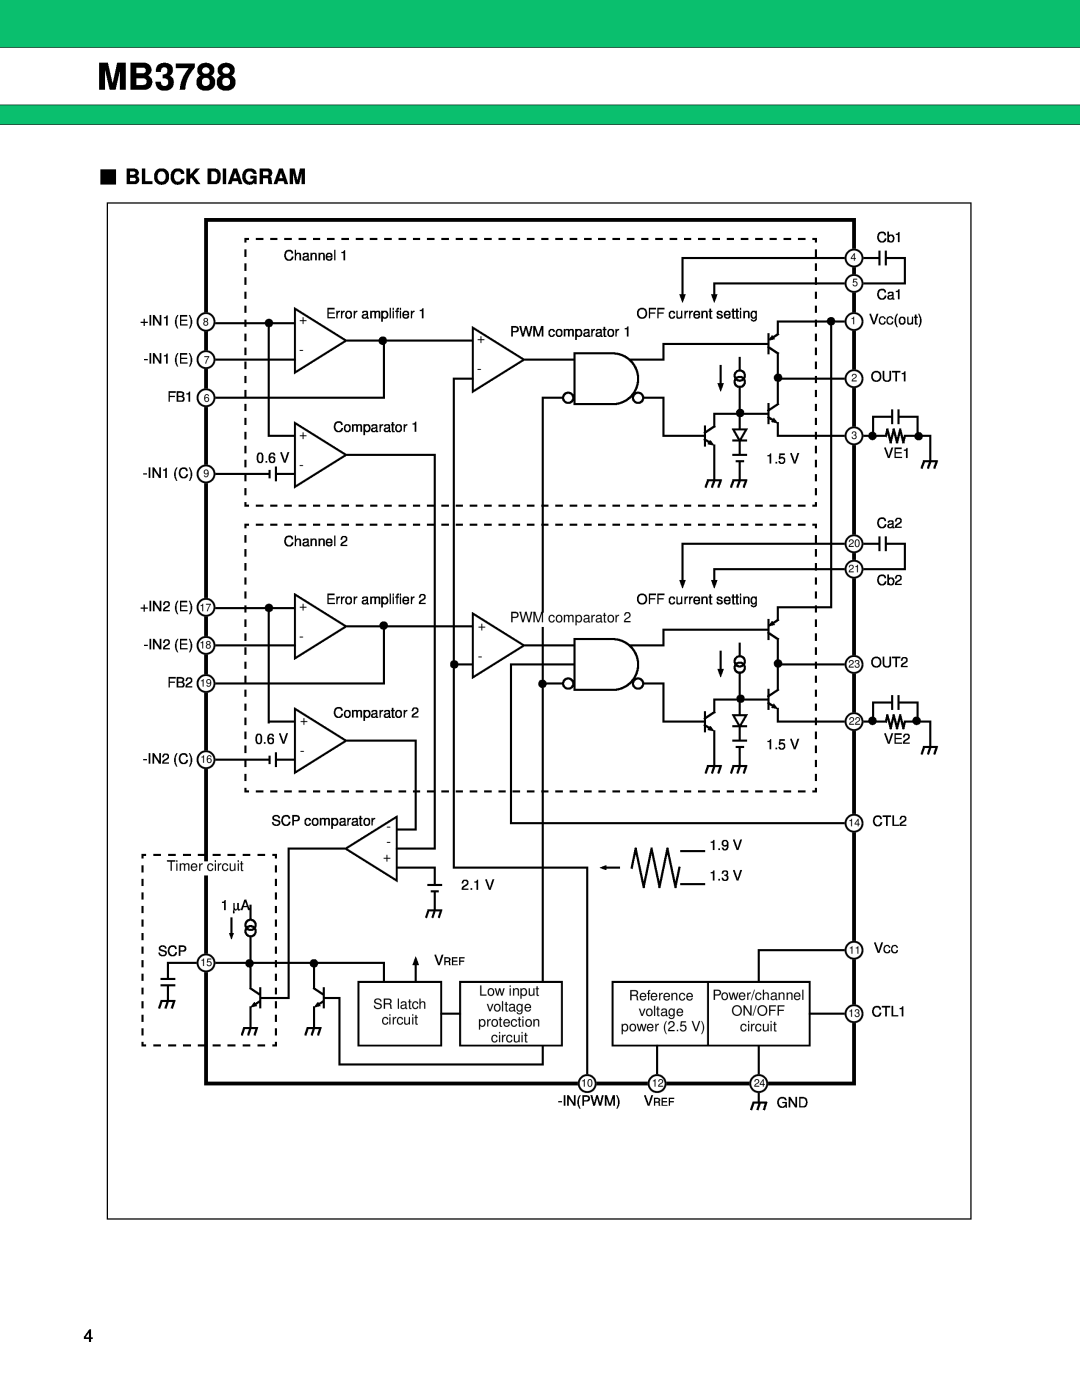 Fujitsu MB3788 manual Block Diagram 